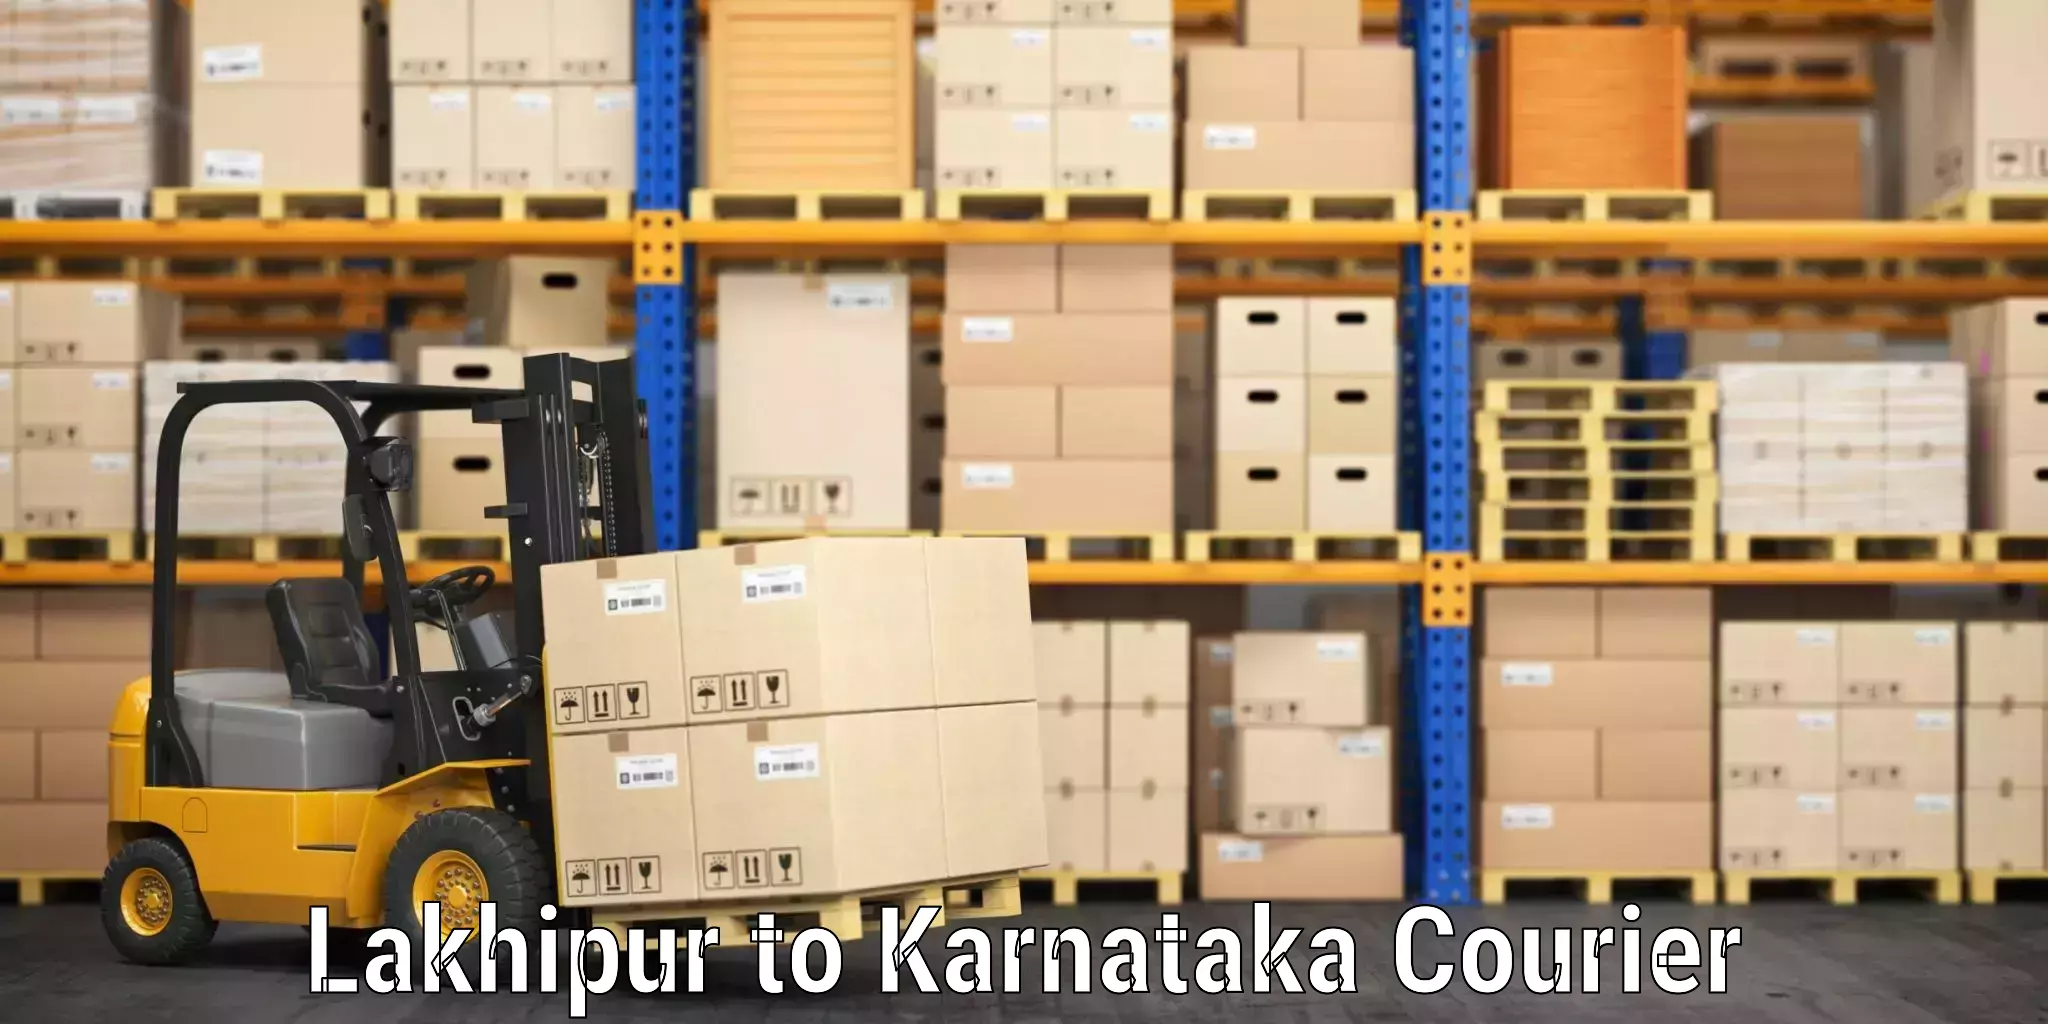 Electronic items luggage shipping Lakhipur to Karnataka